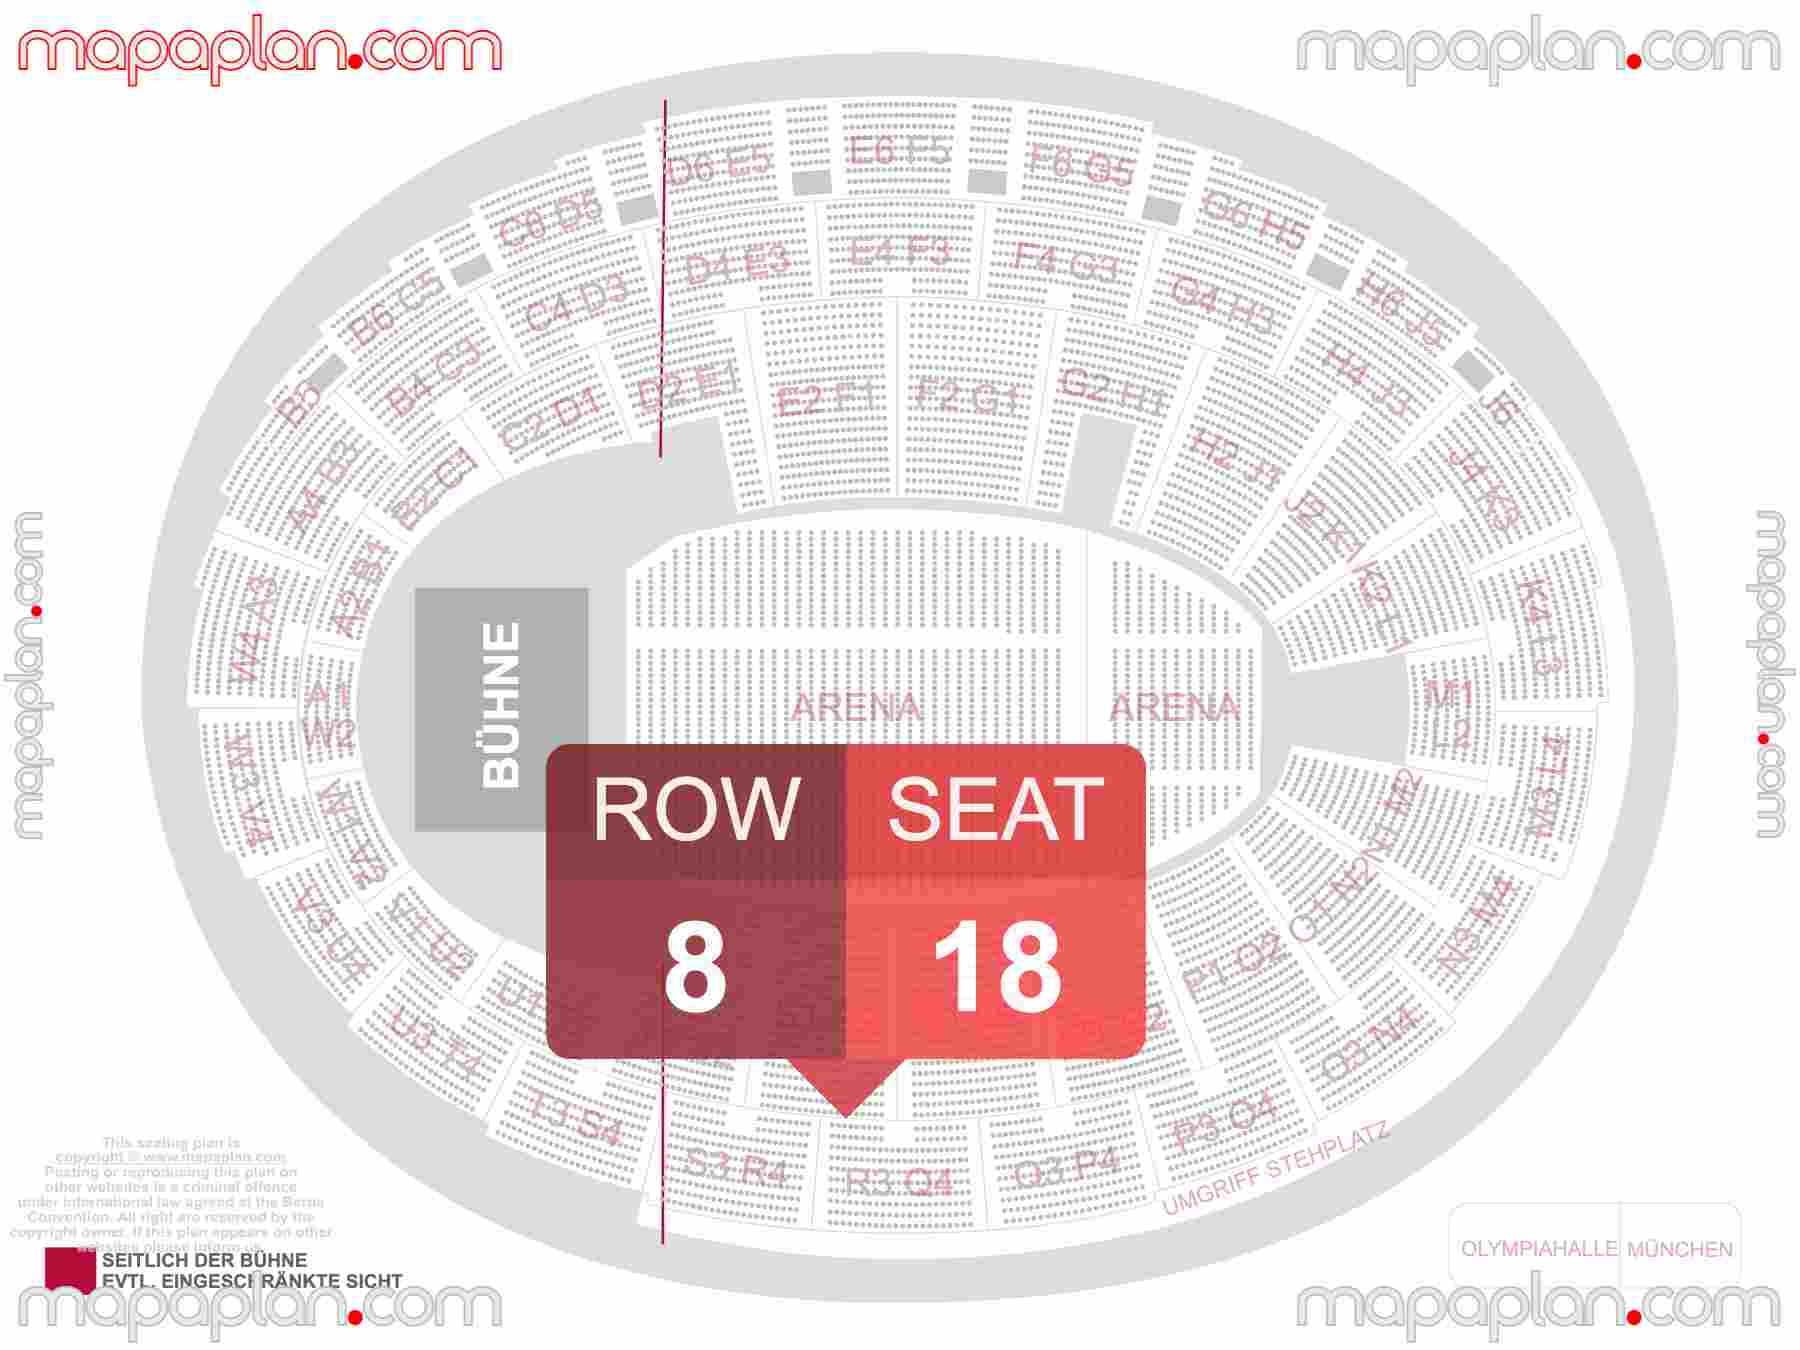 Munich Olympiahalle seating plan Concert Konzerte Sitzplan mit Sitzplatz & Reihennummerierung detailed seat numbers and row numbering plan with interactive map map layout